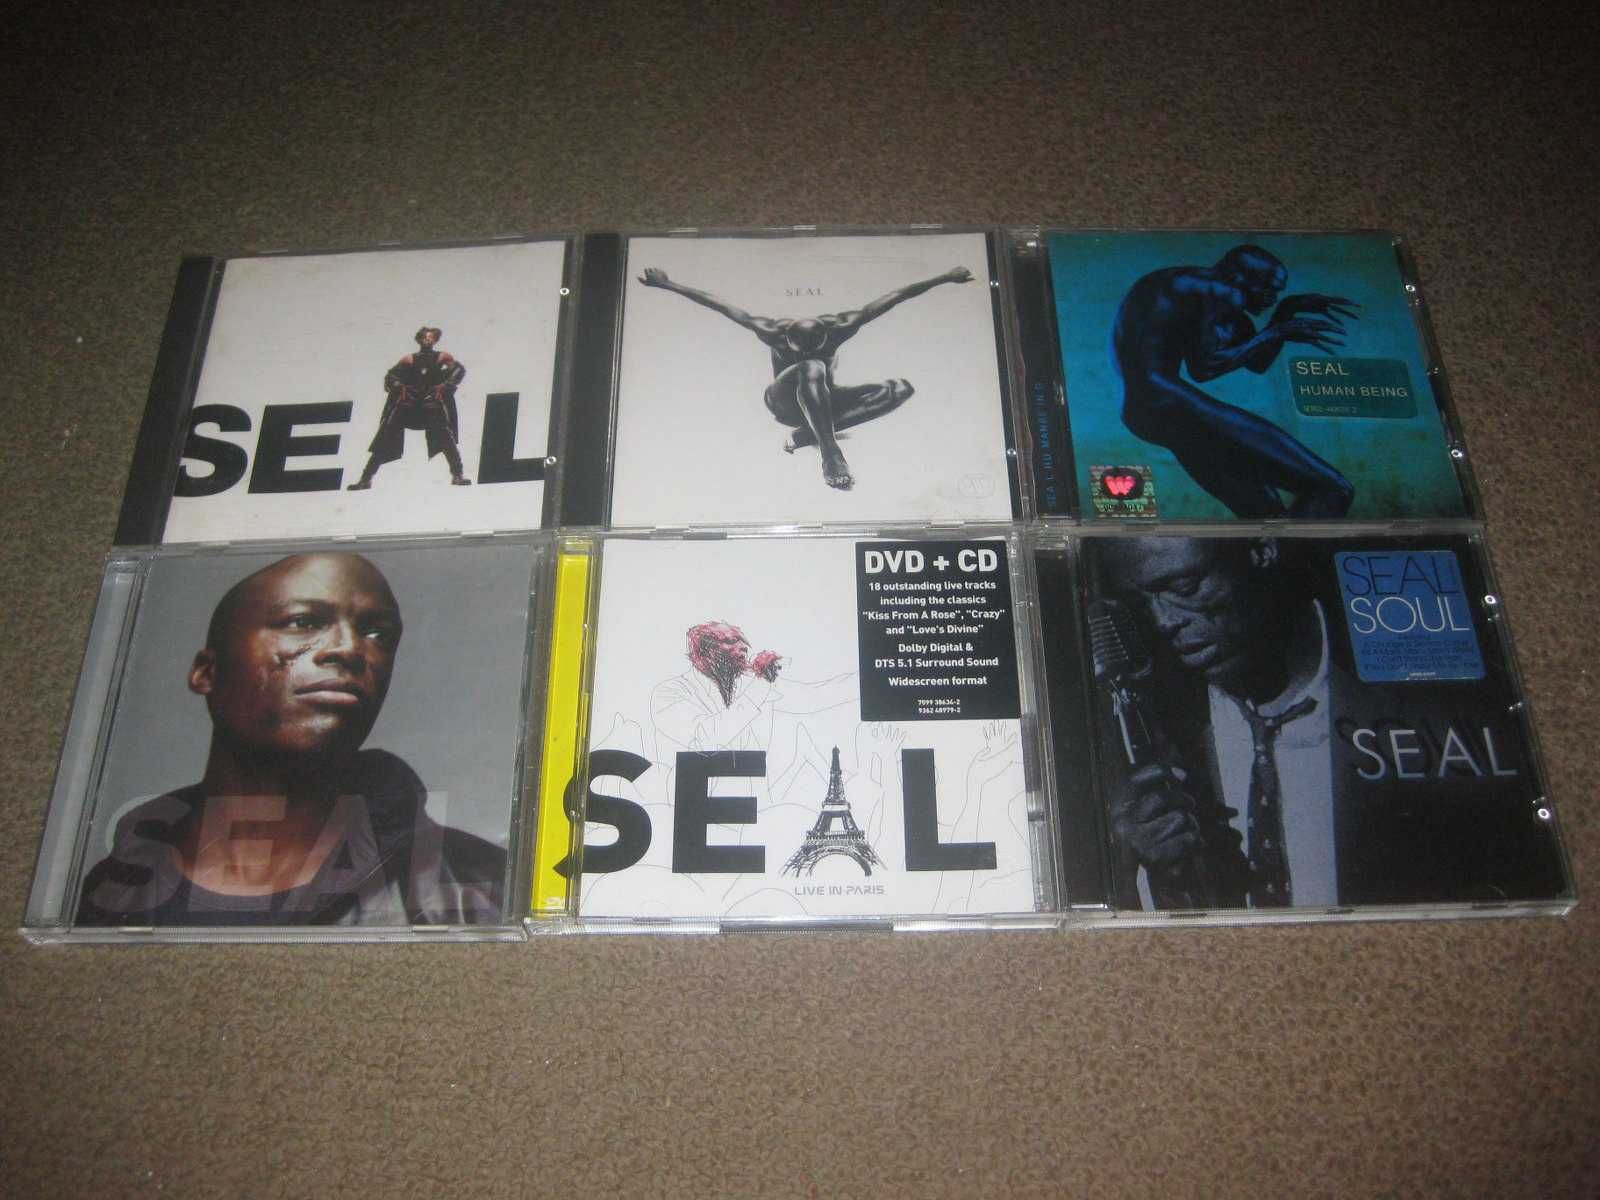 6 CDs do "Seal" Portes Grátis!